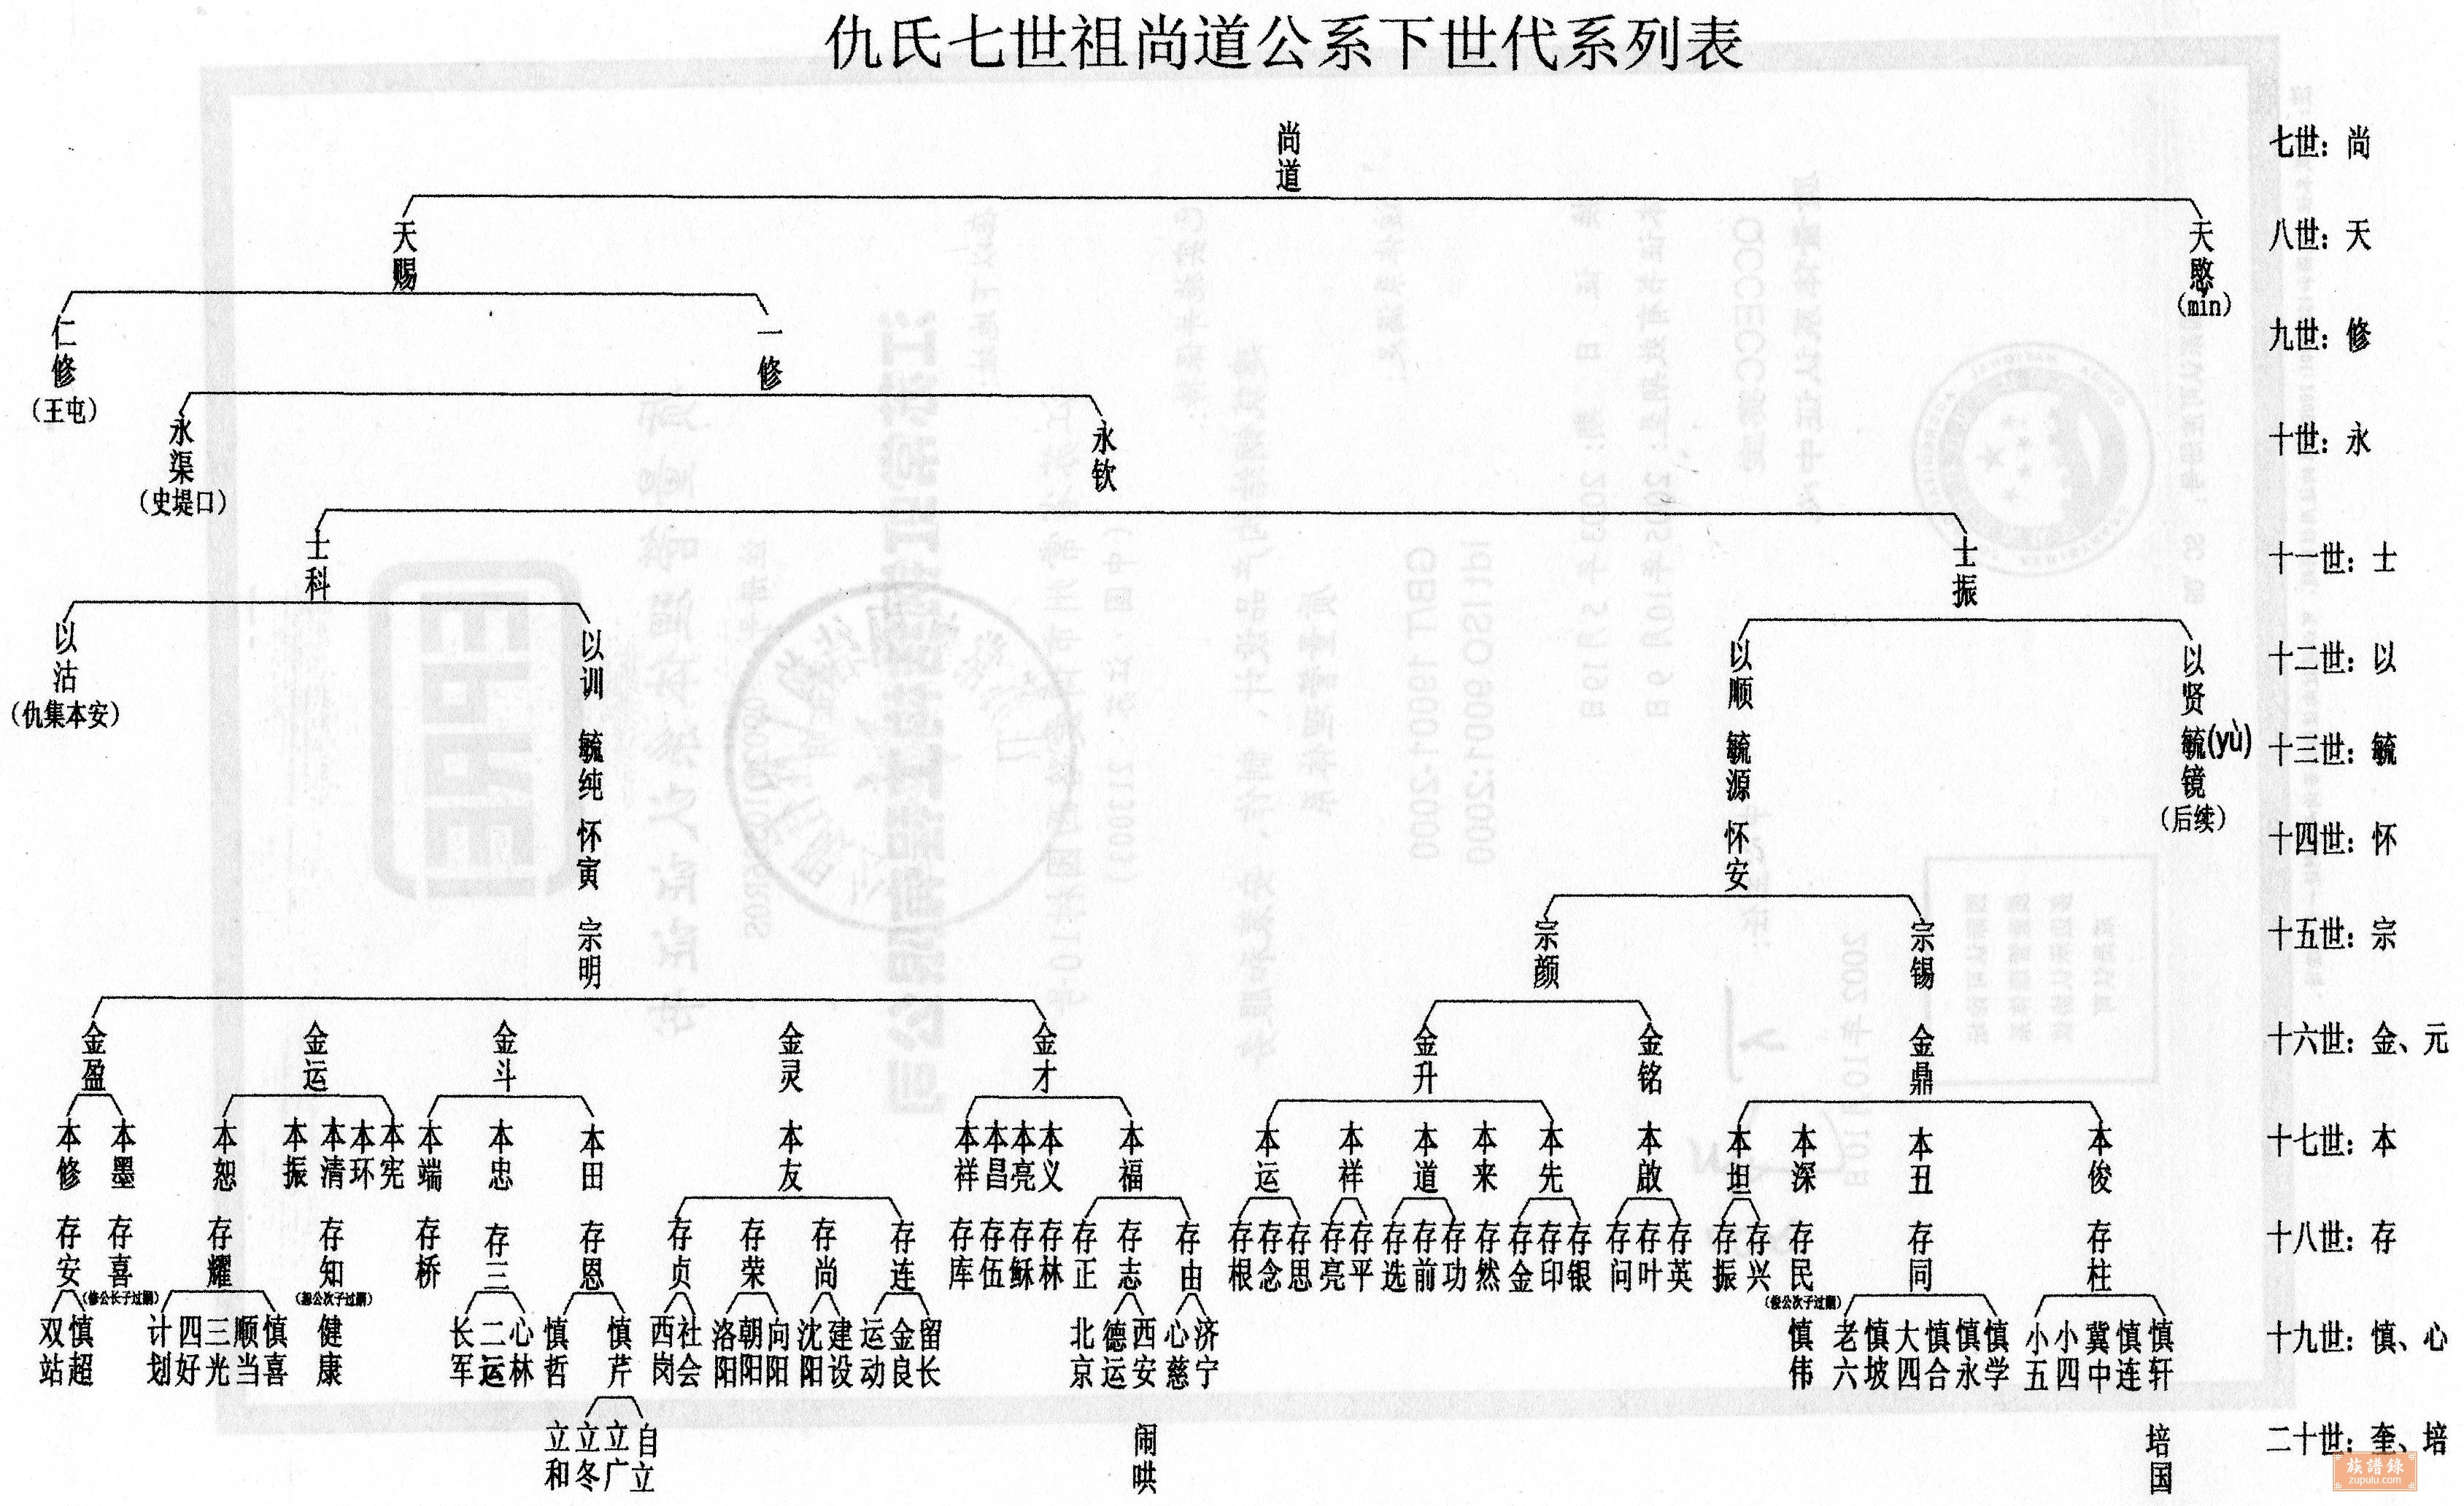 第四节 汉代家谱体例、内容-中国家谱史图志-图片